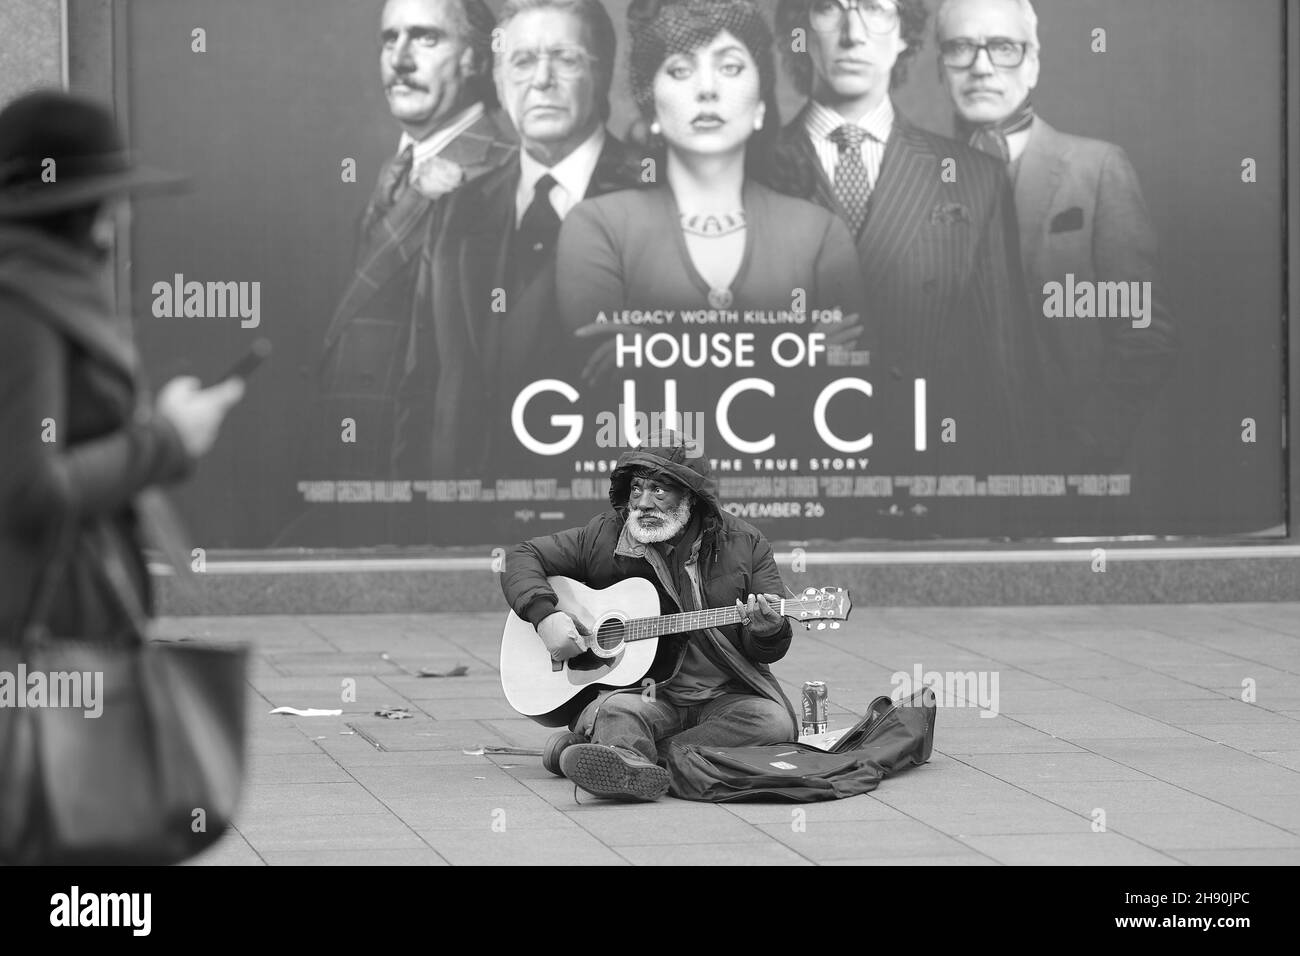 Londra, Inghilterra, Regno Unito. Uomo nero anziano busking / Begging in Leicester Square di fronte a afilm poster per la Casa di Gucci - Dicembre 2021 Foto Stock